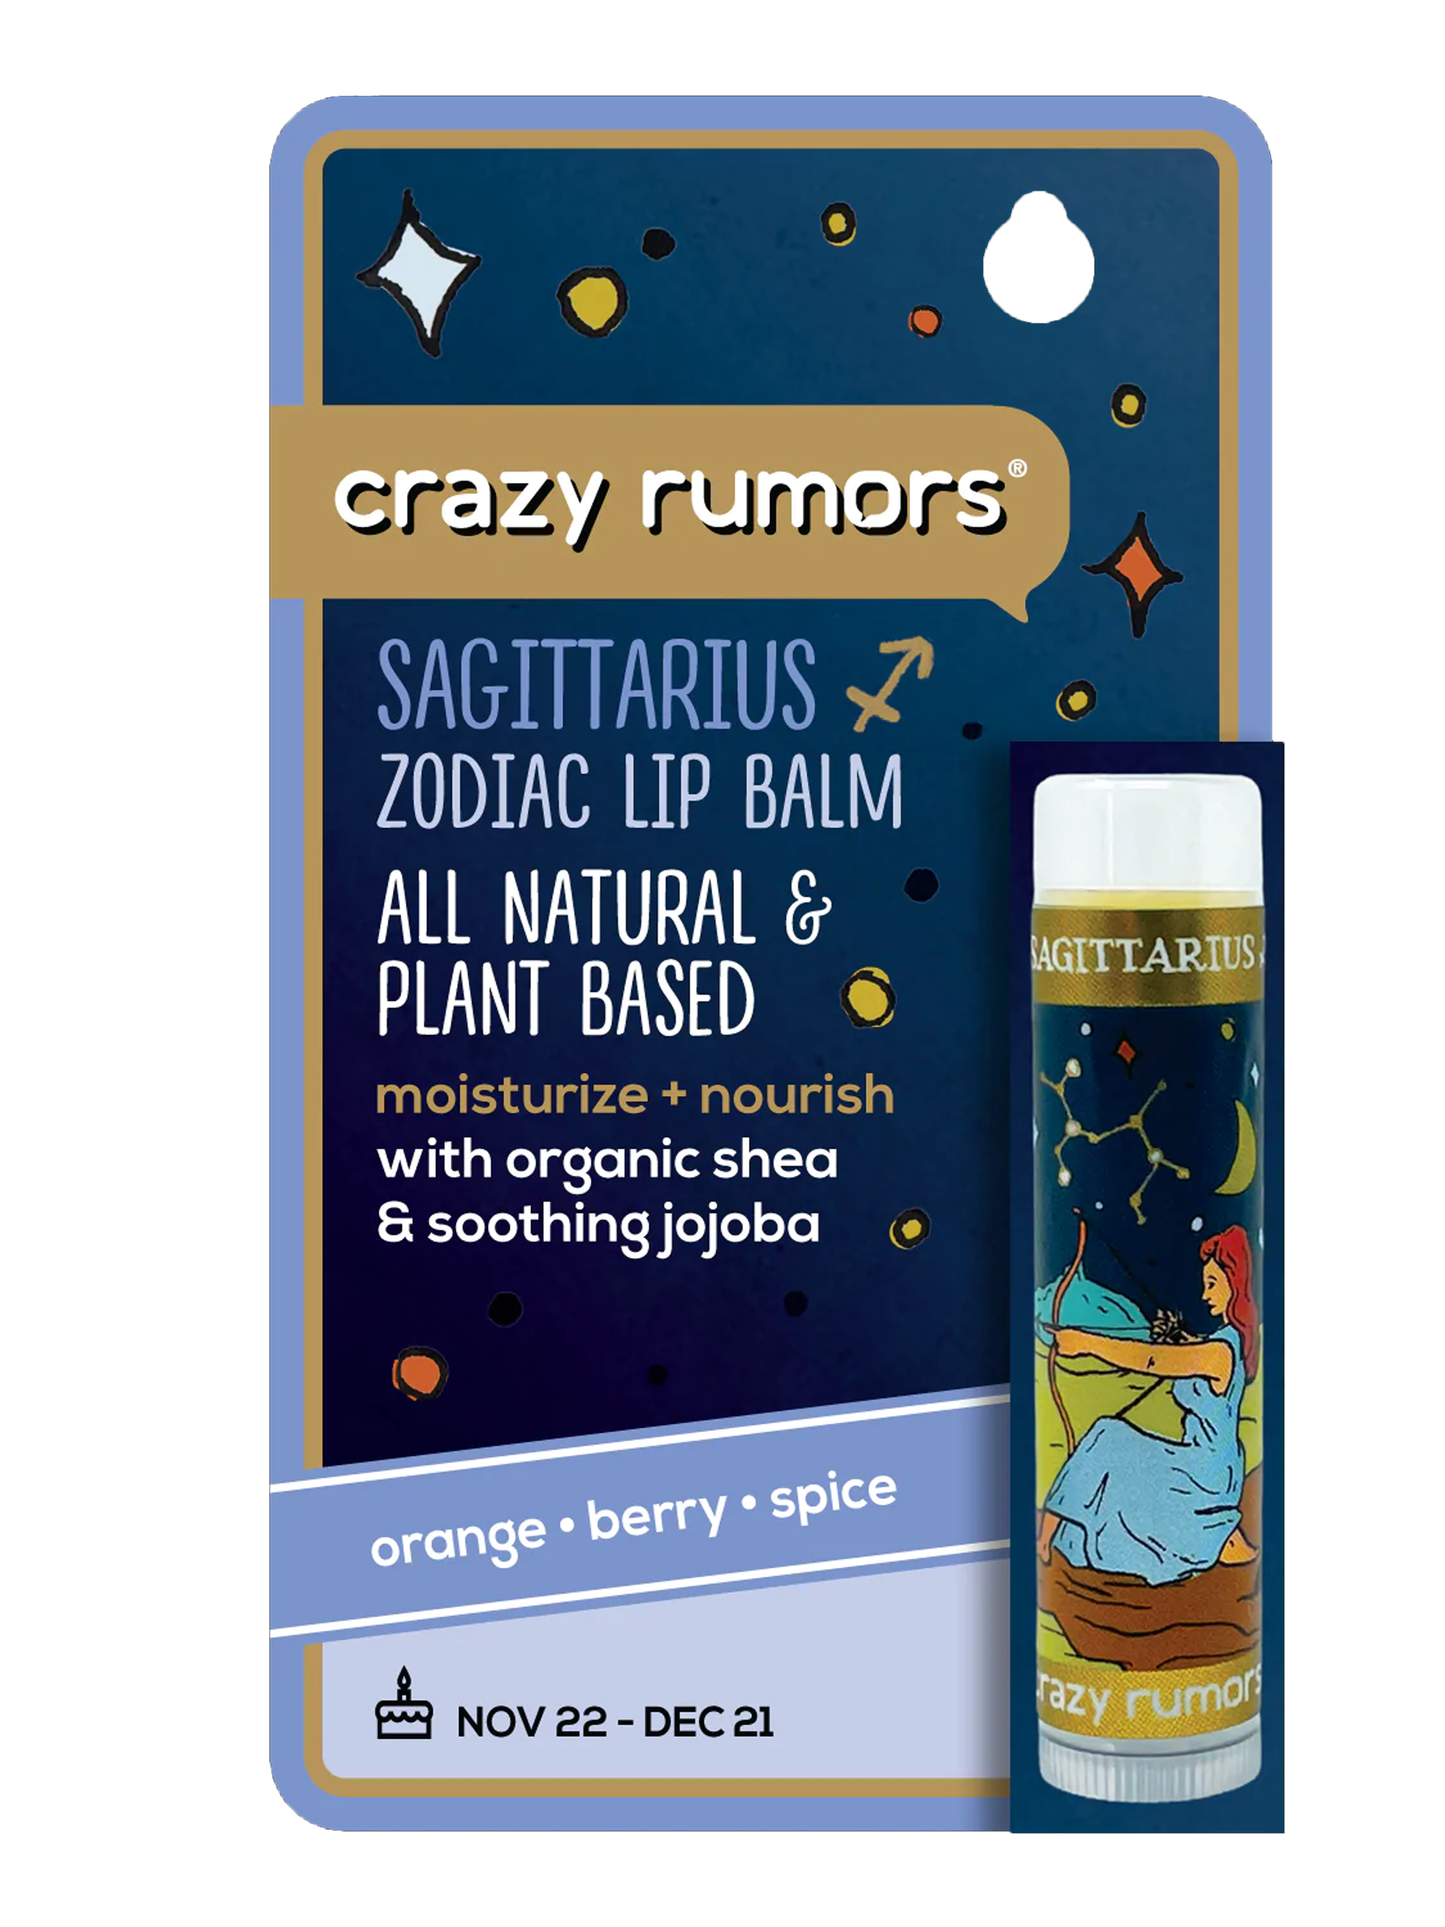 Crazy Rumors - Sagittarius,  Zodiac Lip Balm